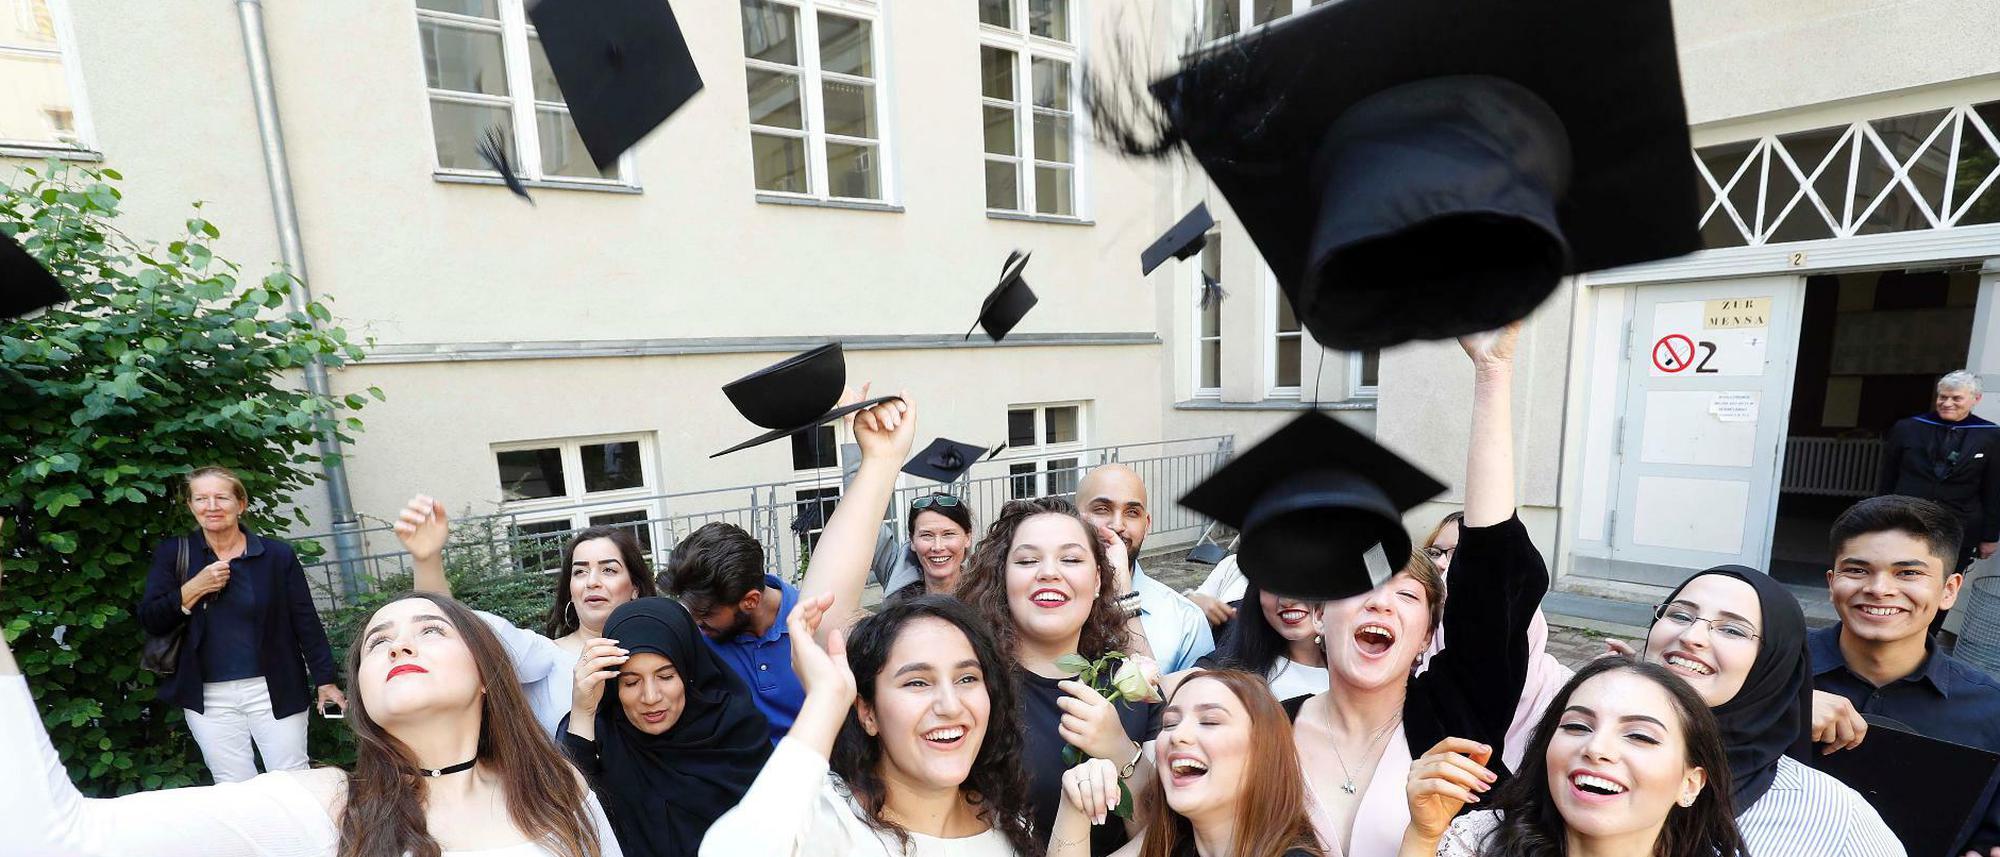 Abitur 2017 in Berlin: Das sind die Namen der erfolgreichen Abiturienten